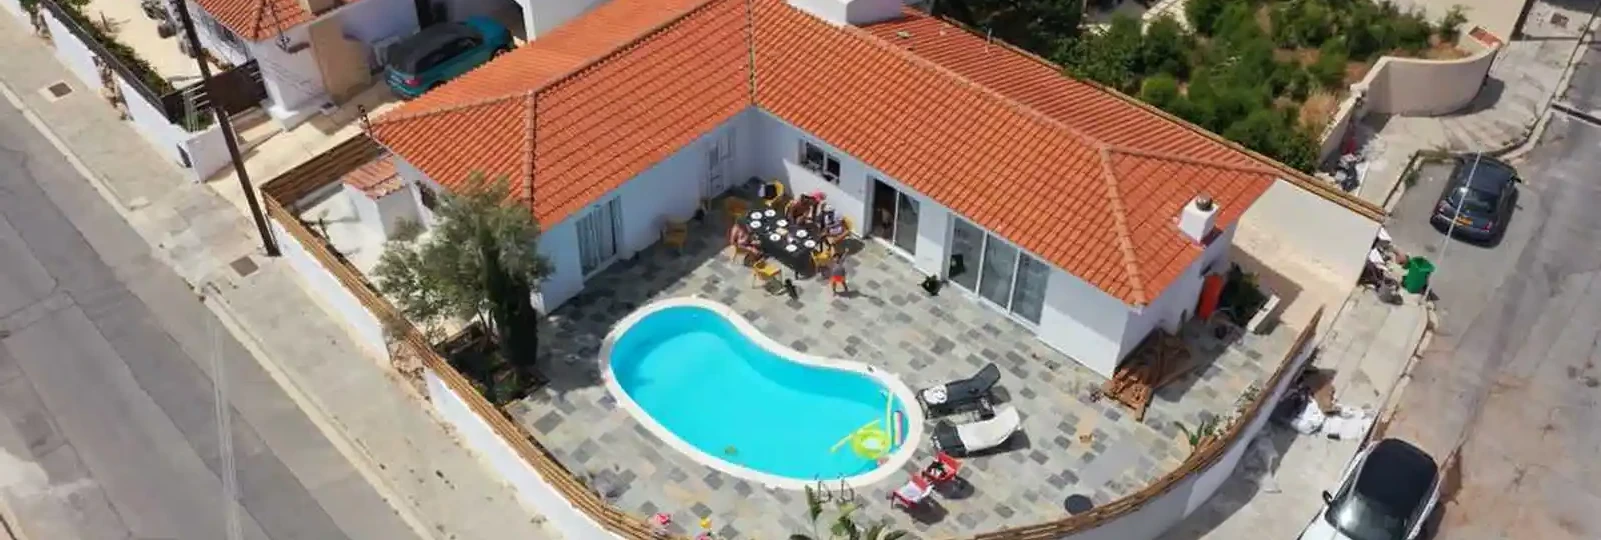 3-bedroom villa to rent €2.300, image 1